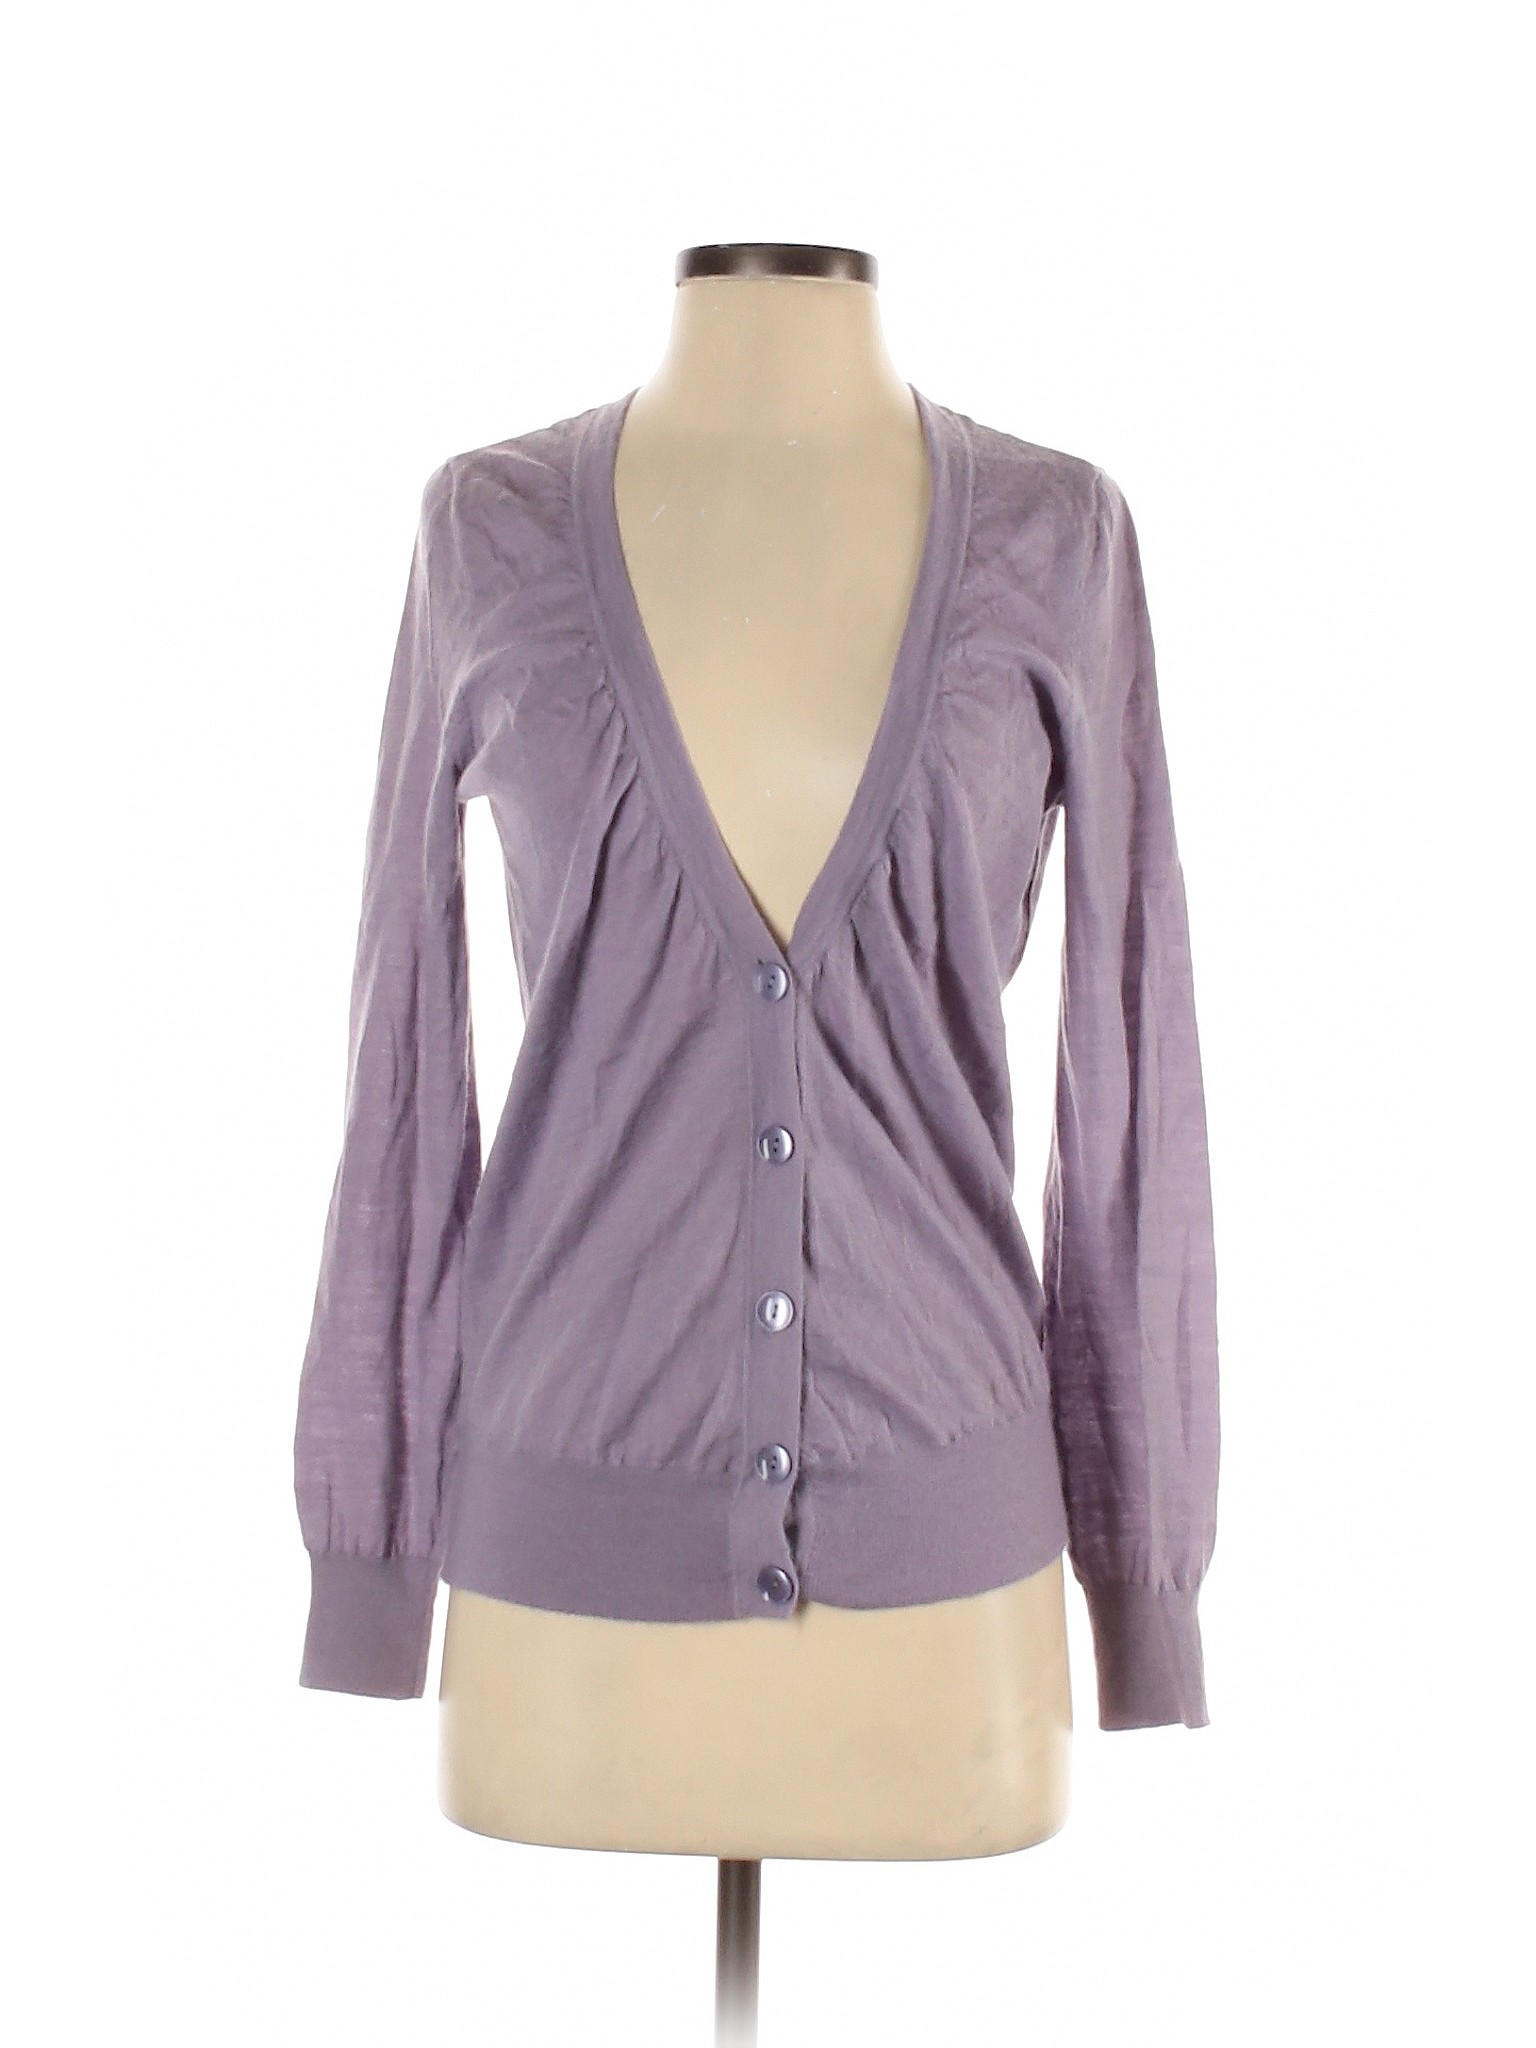 Ann Taylor LOFT Women Purple Wool Cardigan M | eBay